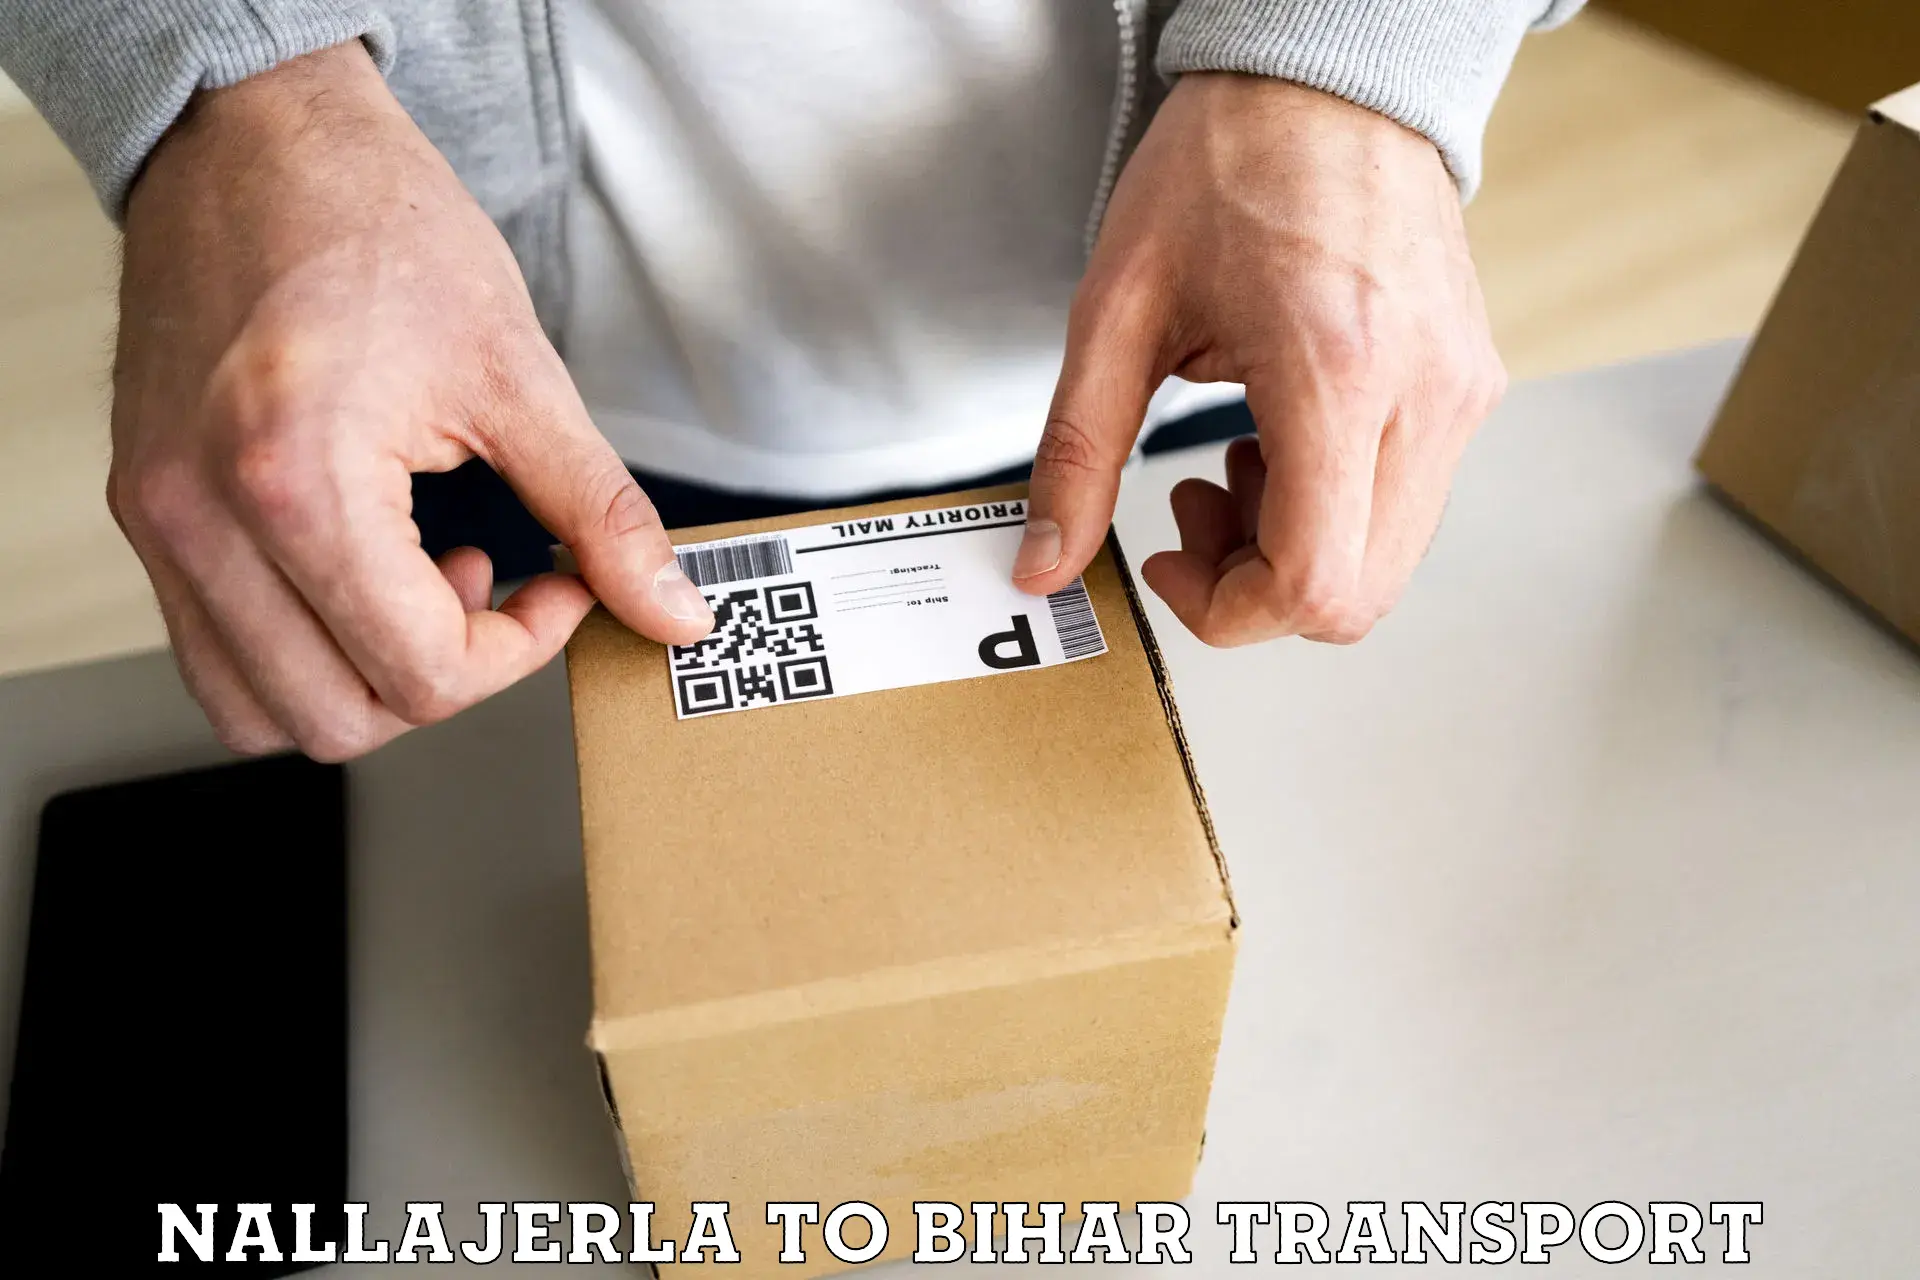 Furniture transport service Nallajerla to Nalanda